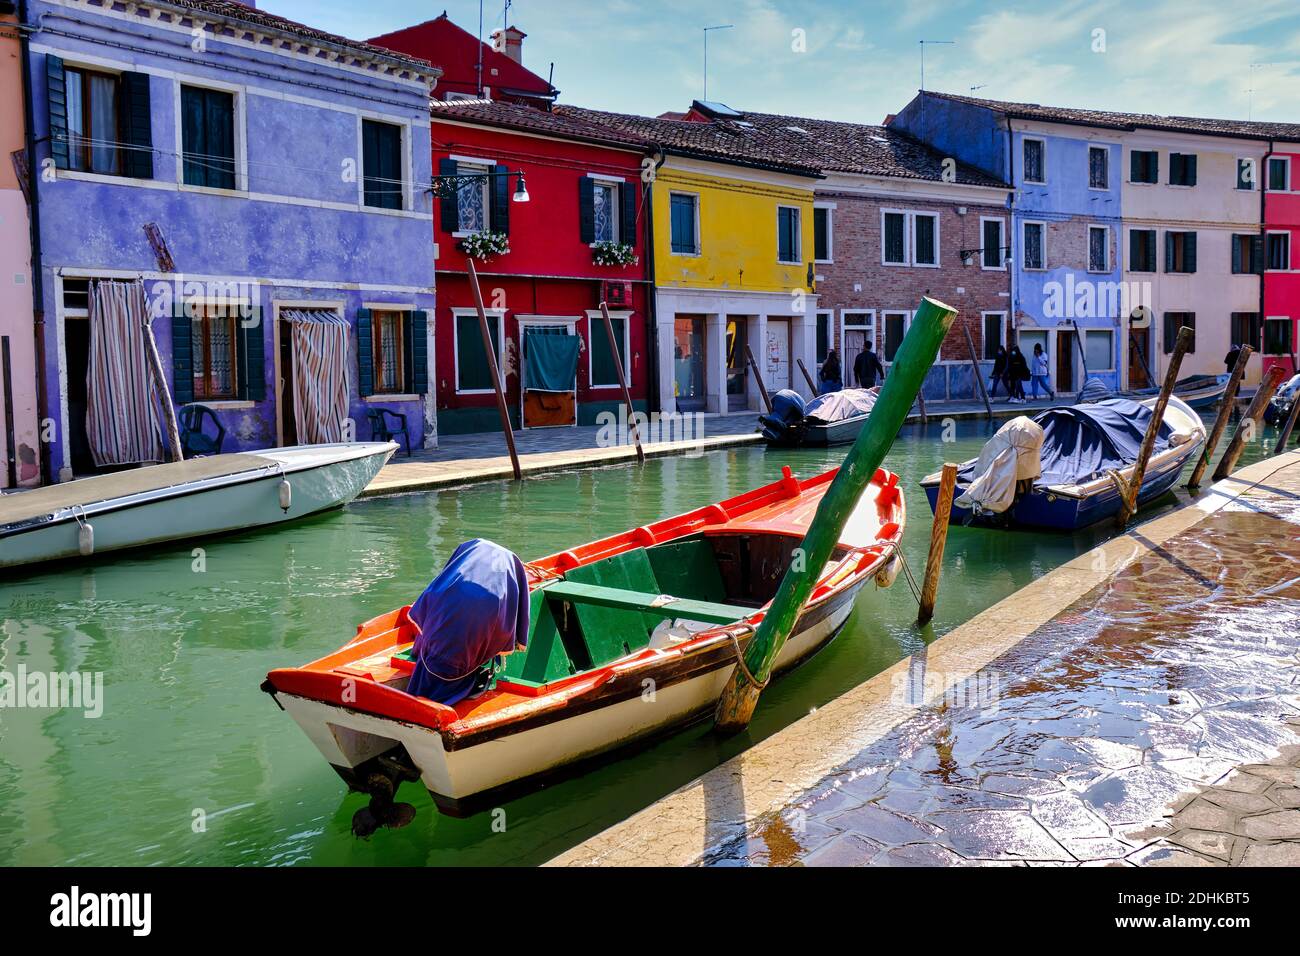 L'isola di Burano, vicino a Venezia, famosa per le sue graziose case di pescatori multicolore, per l'asciugatura giornaliera dei bucati, per i canali e i ristoranti, è una magne Foto Stock